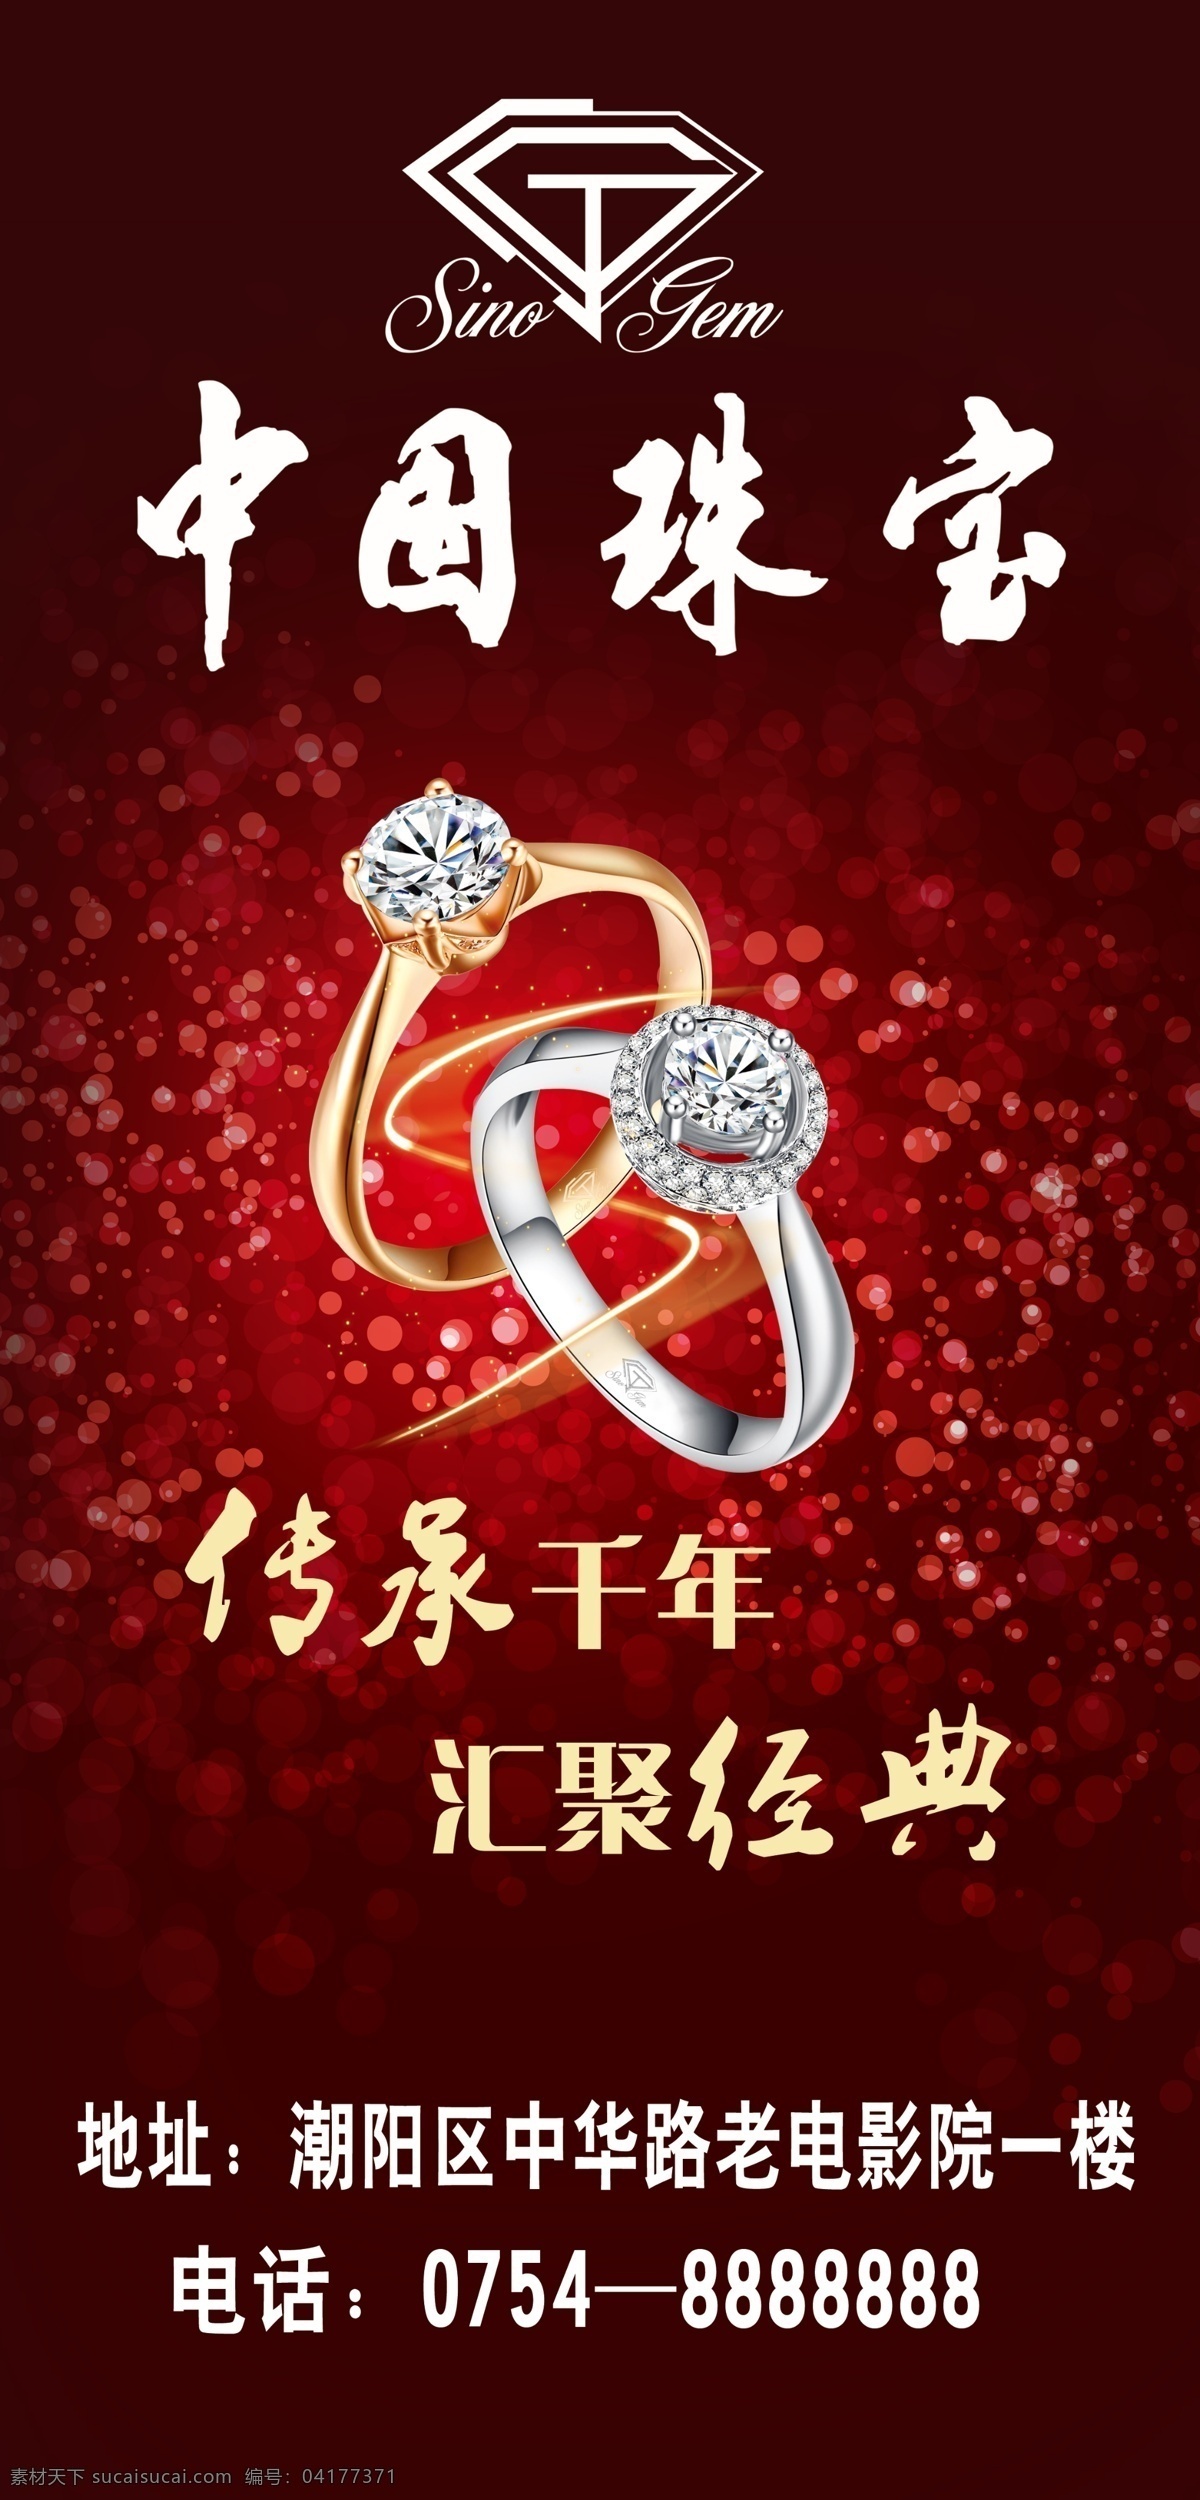 中国珠宝海报 中国珠宝 珠宝海报 珠宝背景 红色